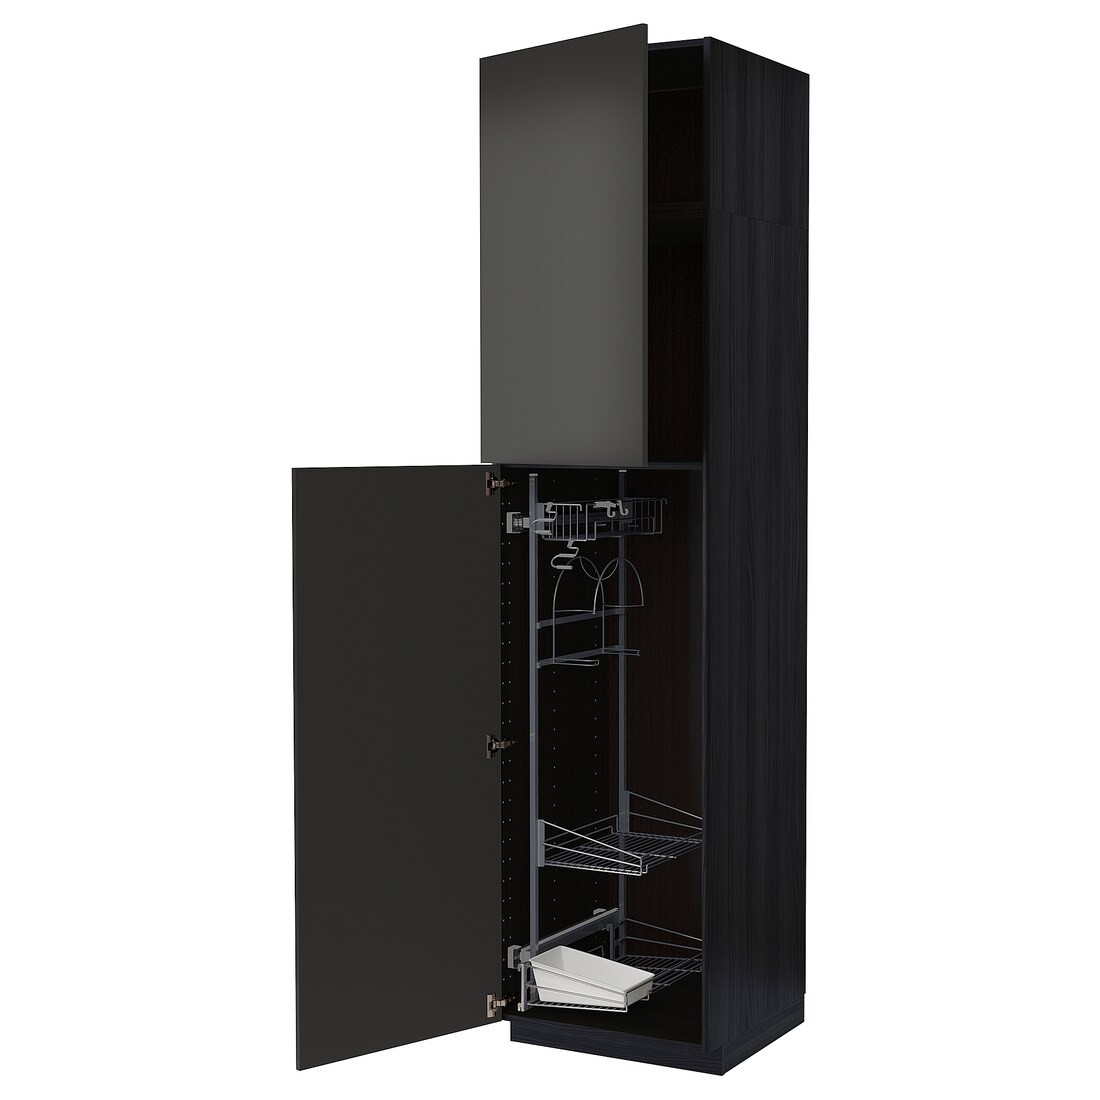 METOD МЕТОД Высокий шкаф с отделением для аксессуаров для уборки, черный / Nickebo матовый антрацит, 60x60x240 см